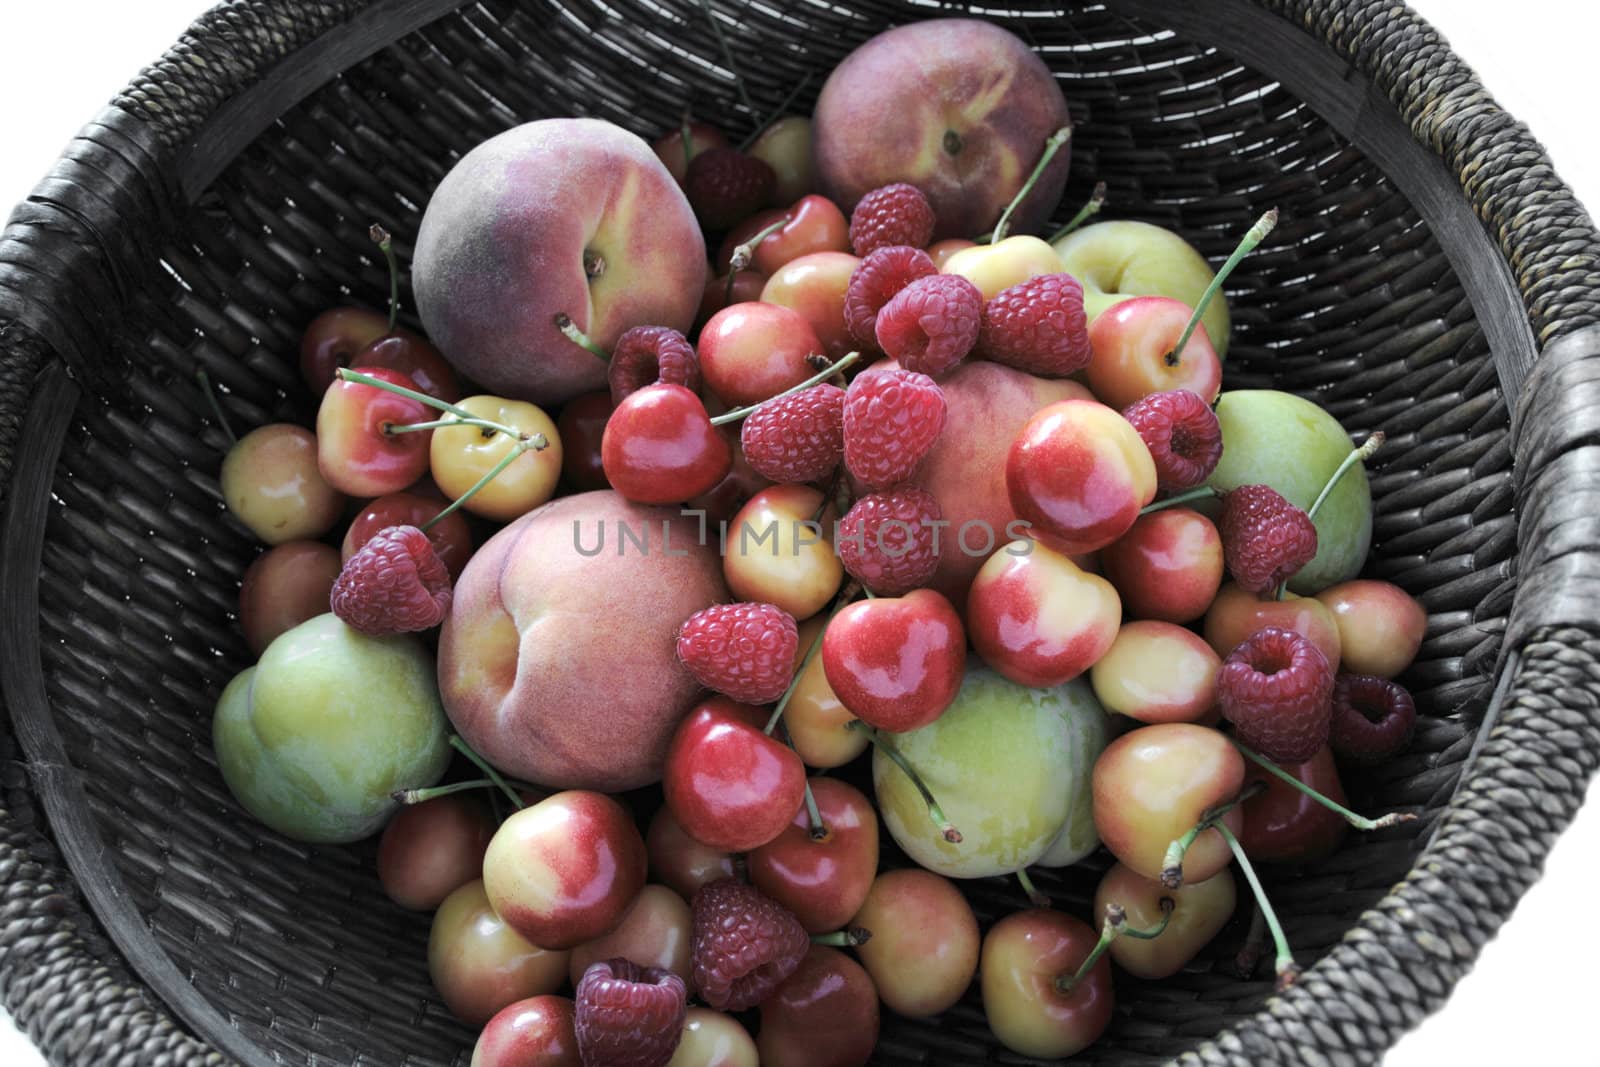 peaches, plums, raspberries, Rainier cherries by nebari